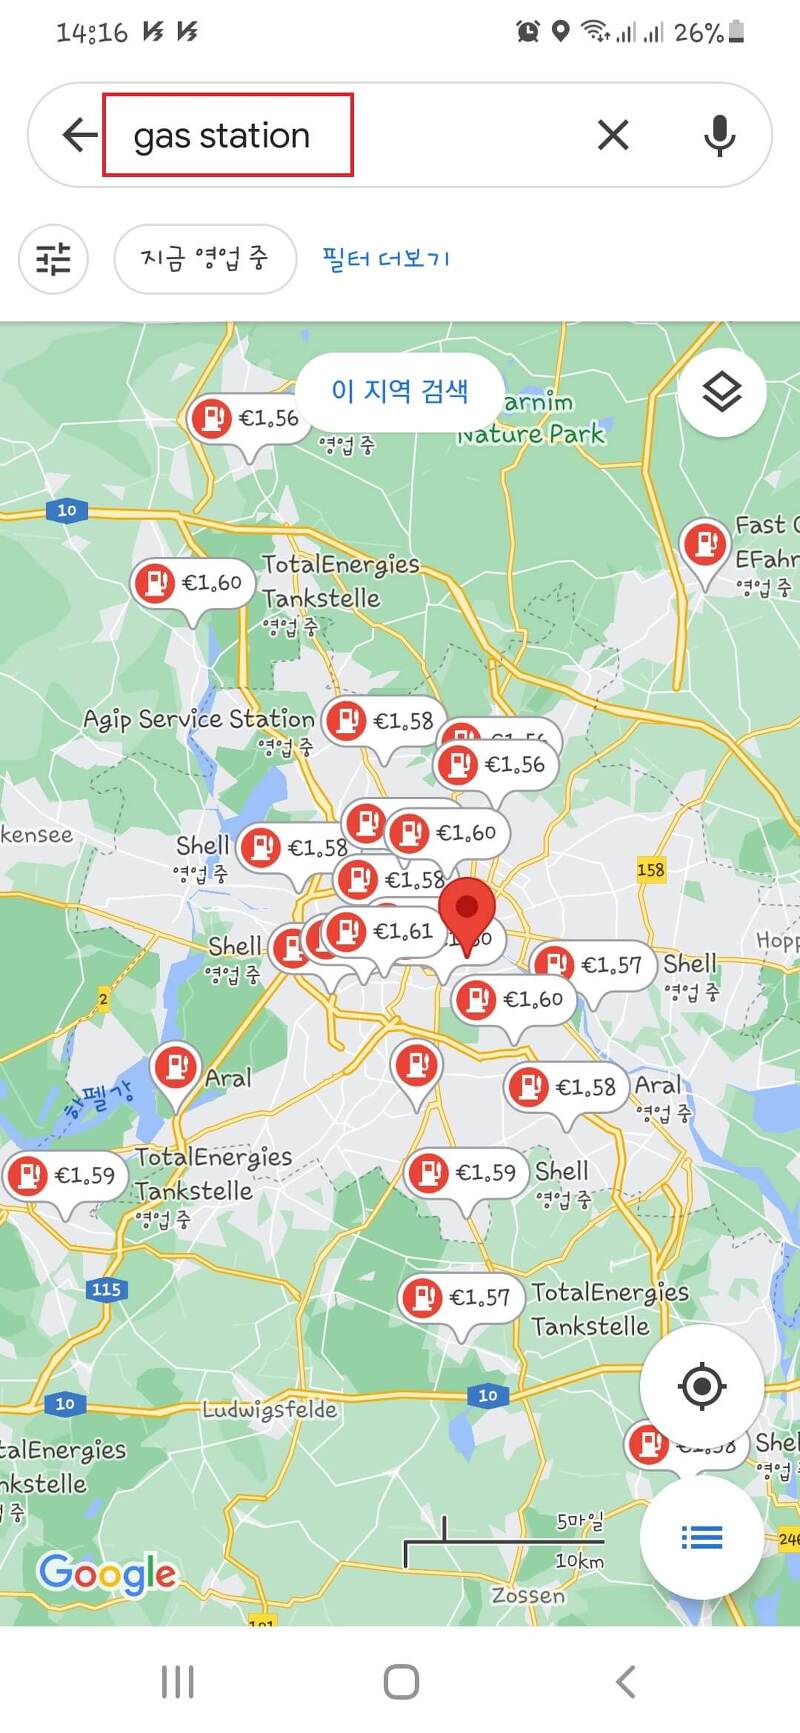 독일 및 유럽 가장 저렴한 주유소 찾는 방법~, 나만 모르는 구글 앱의 유용한 기능!